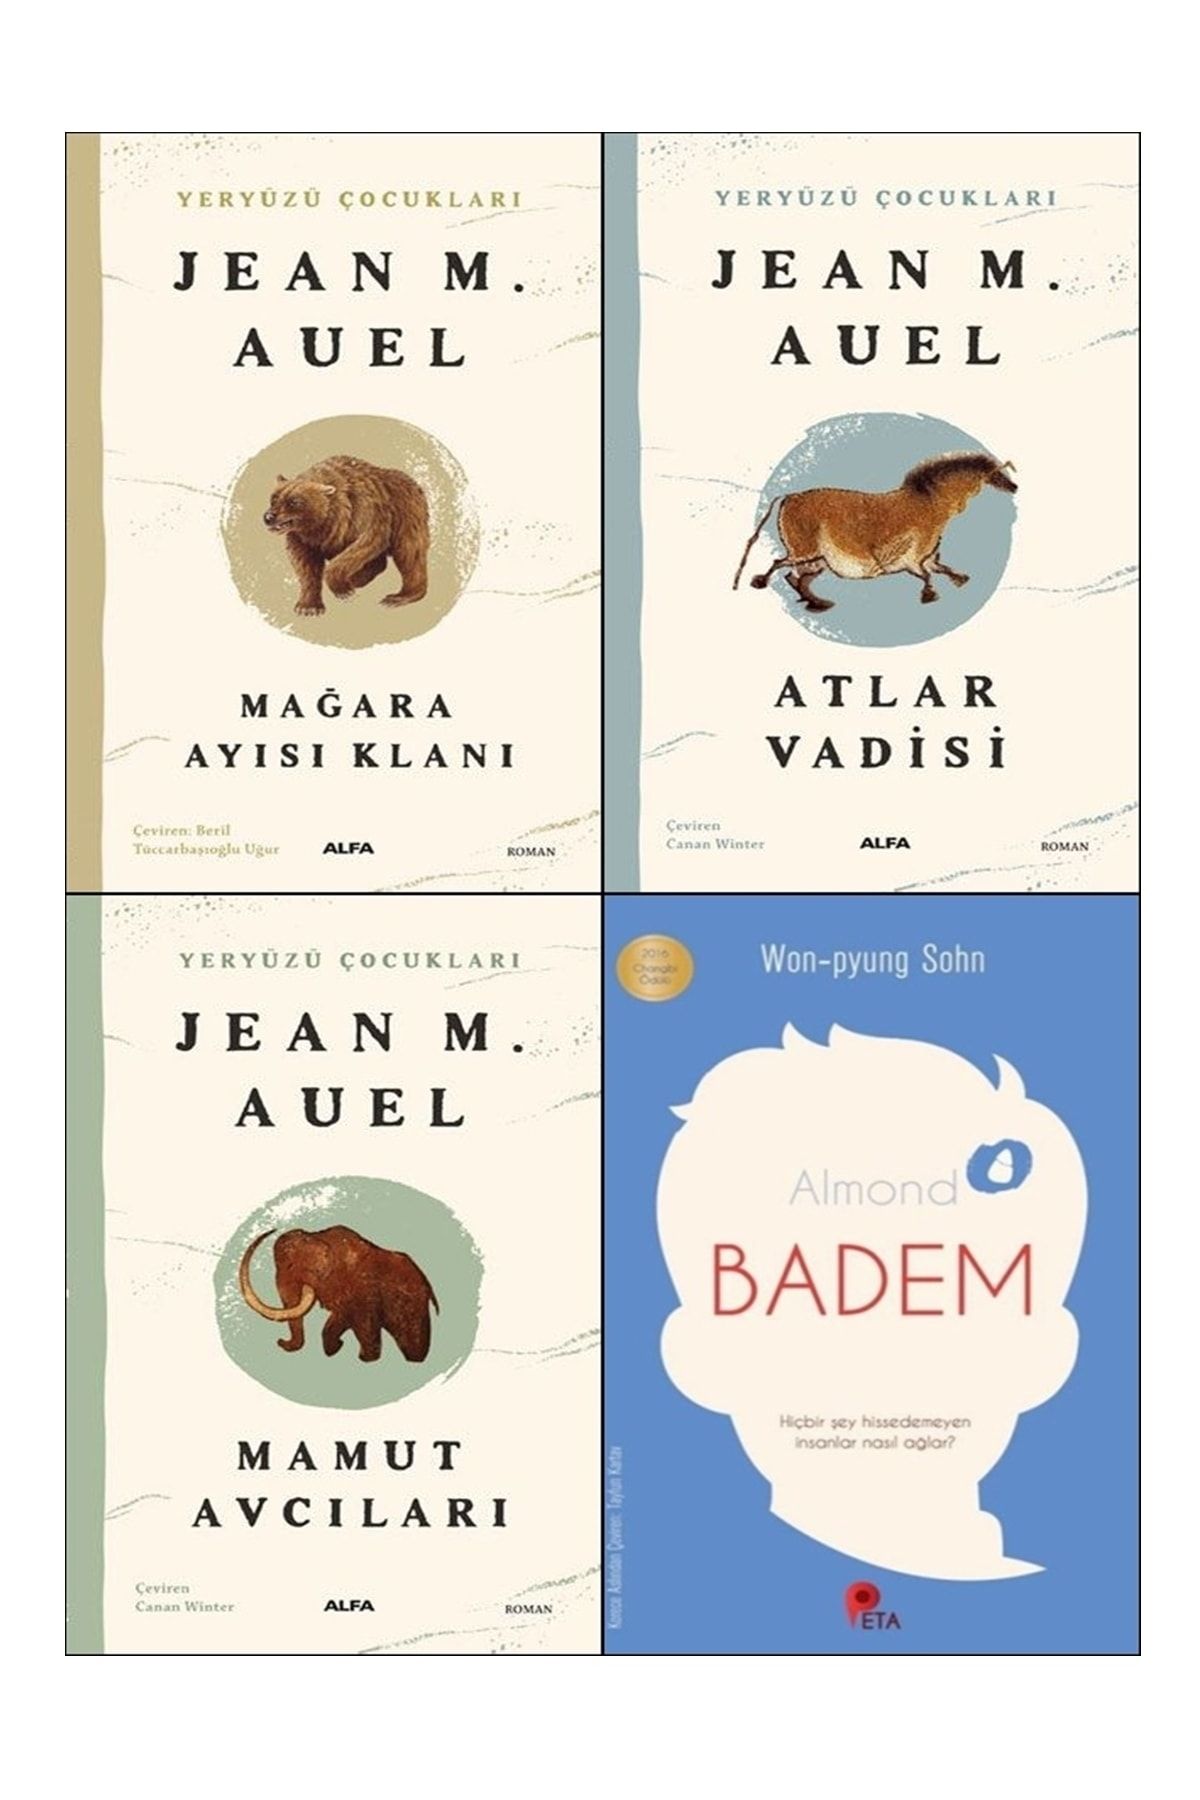 Alfa Yayınları Yeryüzü Çocukları 3 Kitap (mağara Ayısı Klanı, Atlar Vadisi, Mamut Avcıları) + Badem Kitabı Hediye